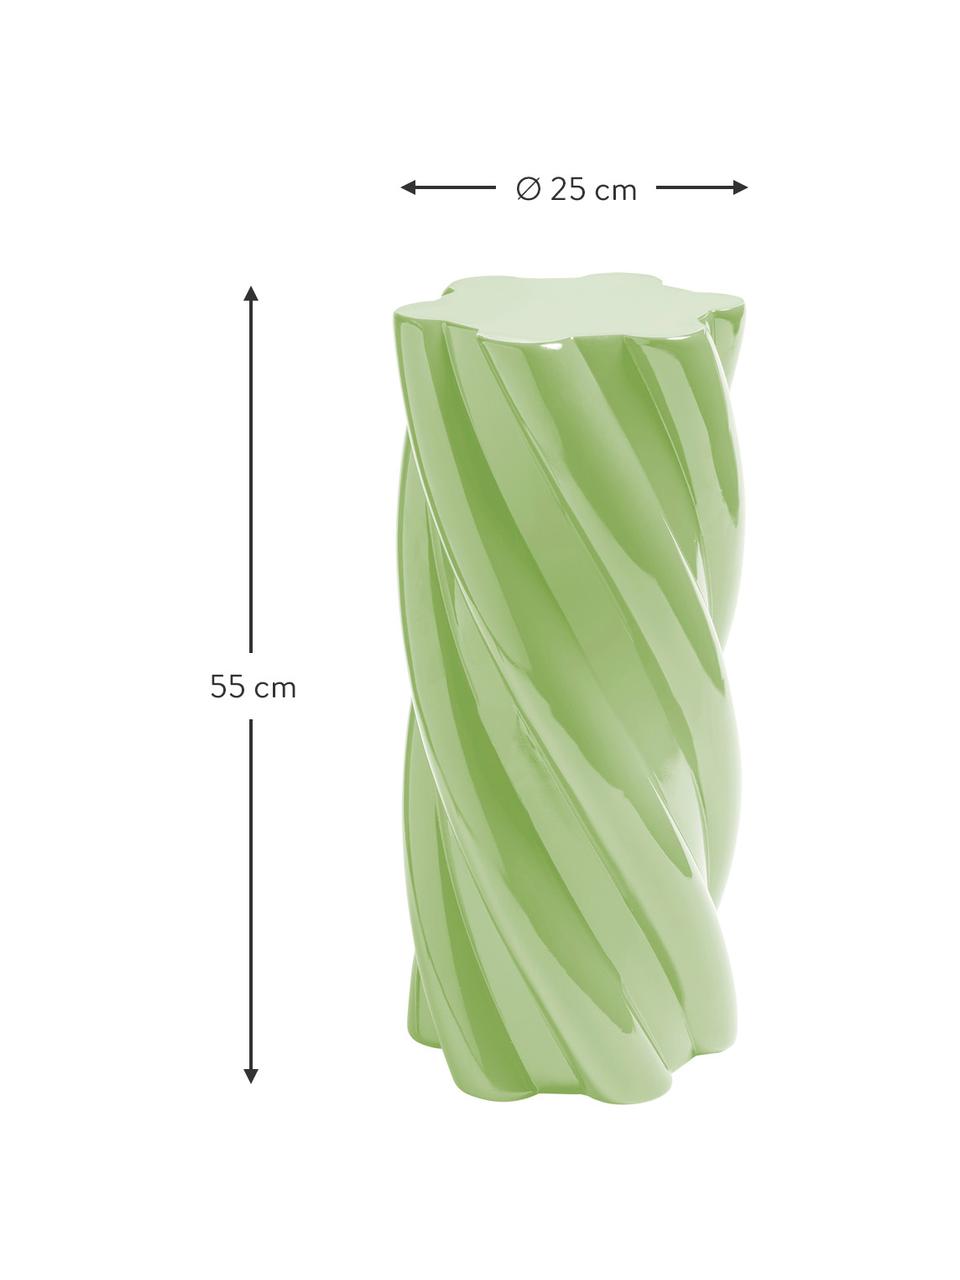 Beistelltisch Marshmallow in Grün, Glasfaser, Grün, Ø 25 x H 55 cm